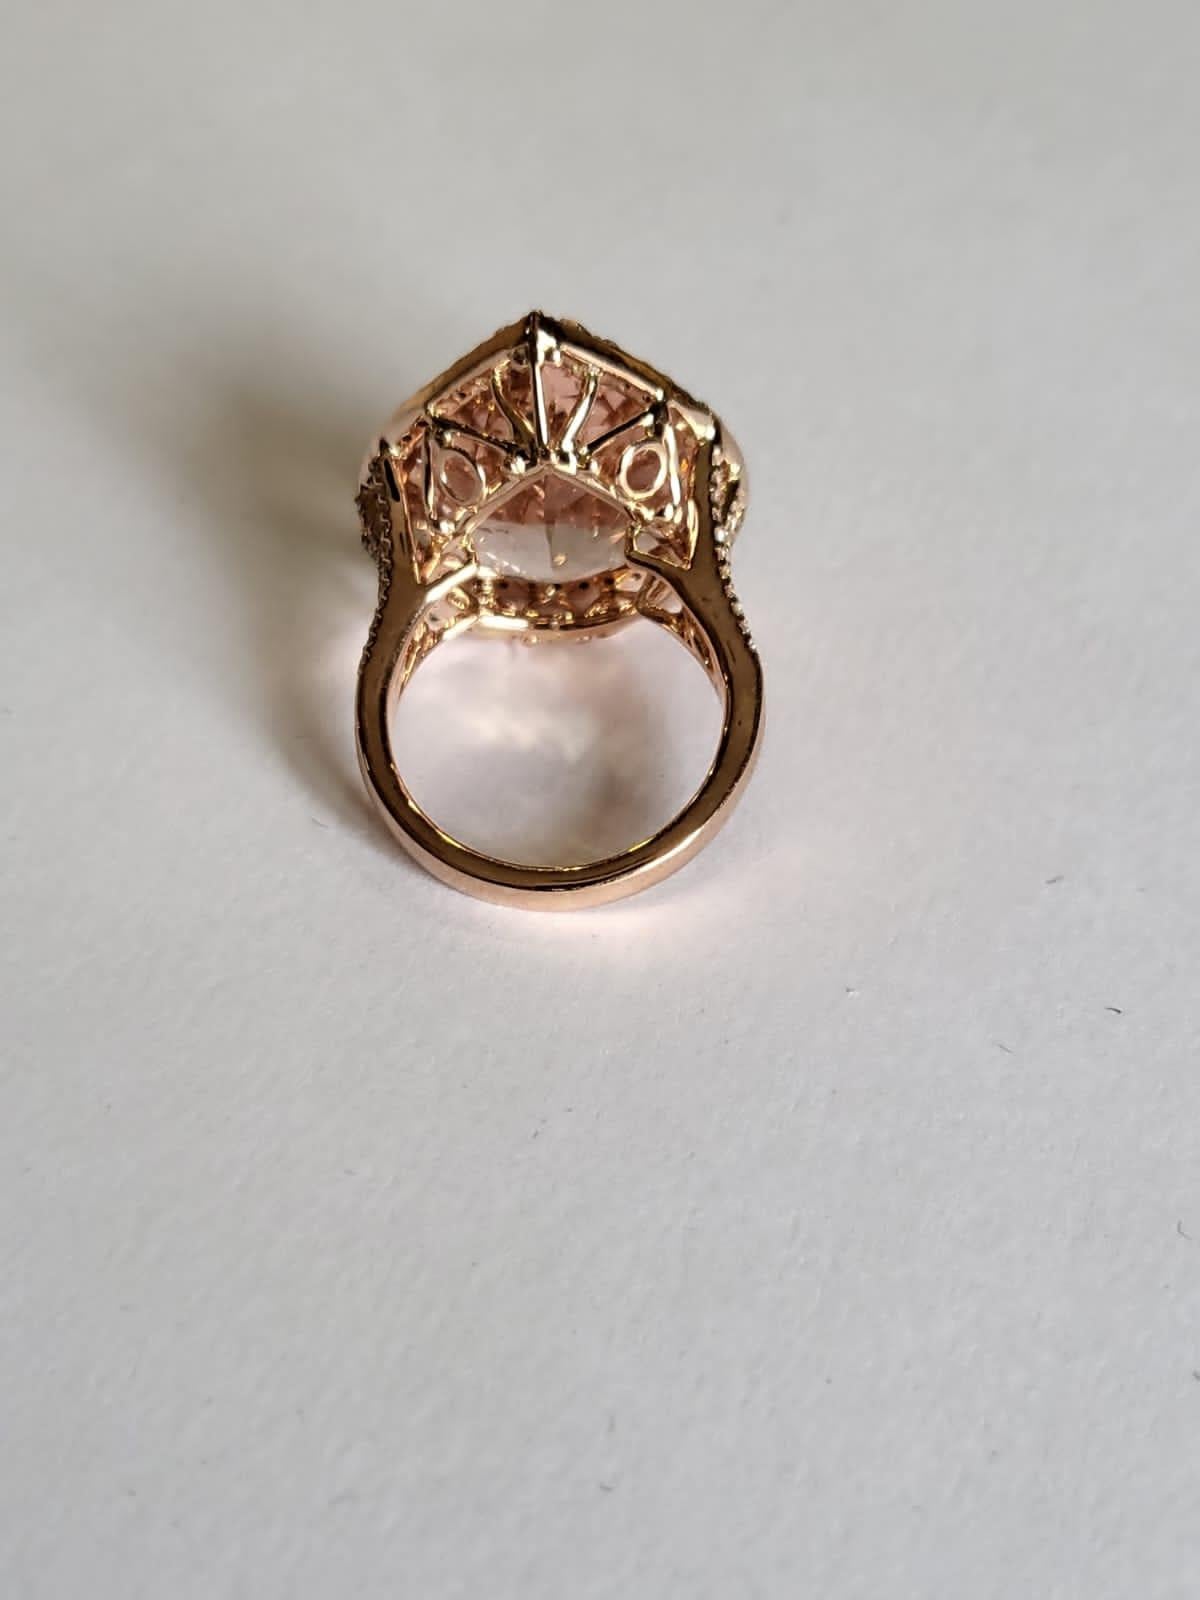 Modern Set in 18k Rose Gold, 16.21 Carats Morganite & Diamonds Engagement/Cocktail Ring